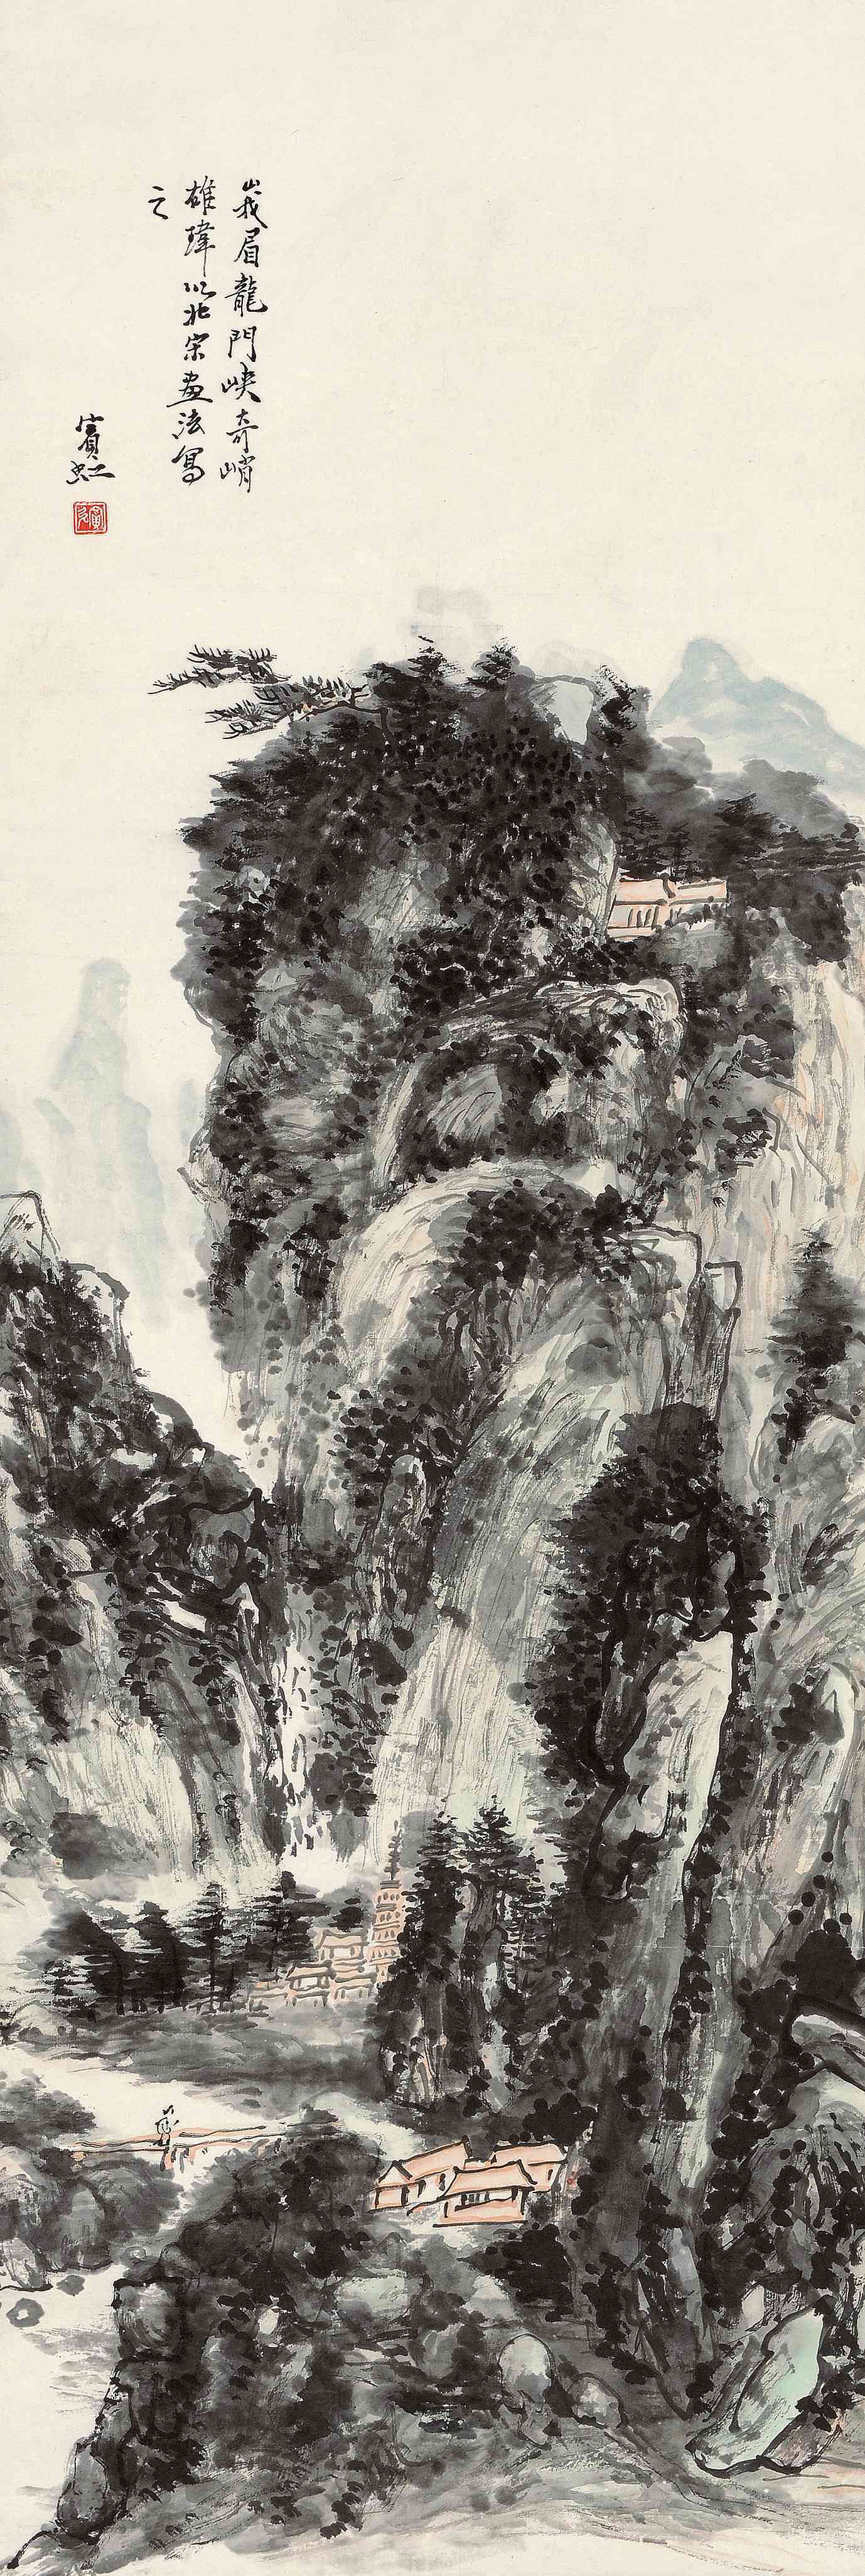 上海驰翰美术馆 德基美术馆 尺寸:118×40cm 题识:峨眉龙门峡,奇峭雄